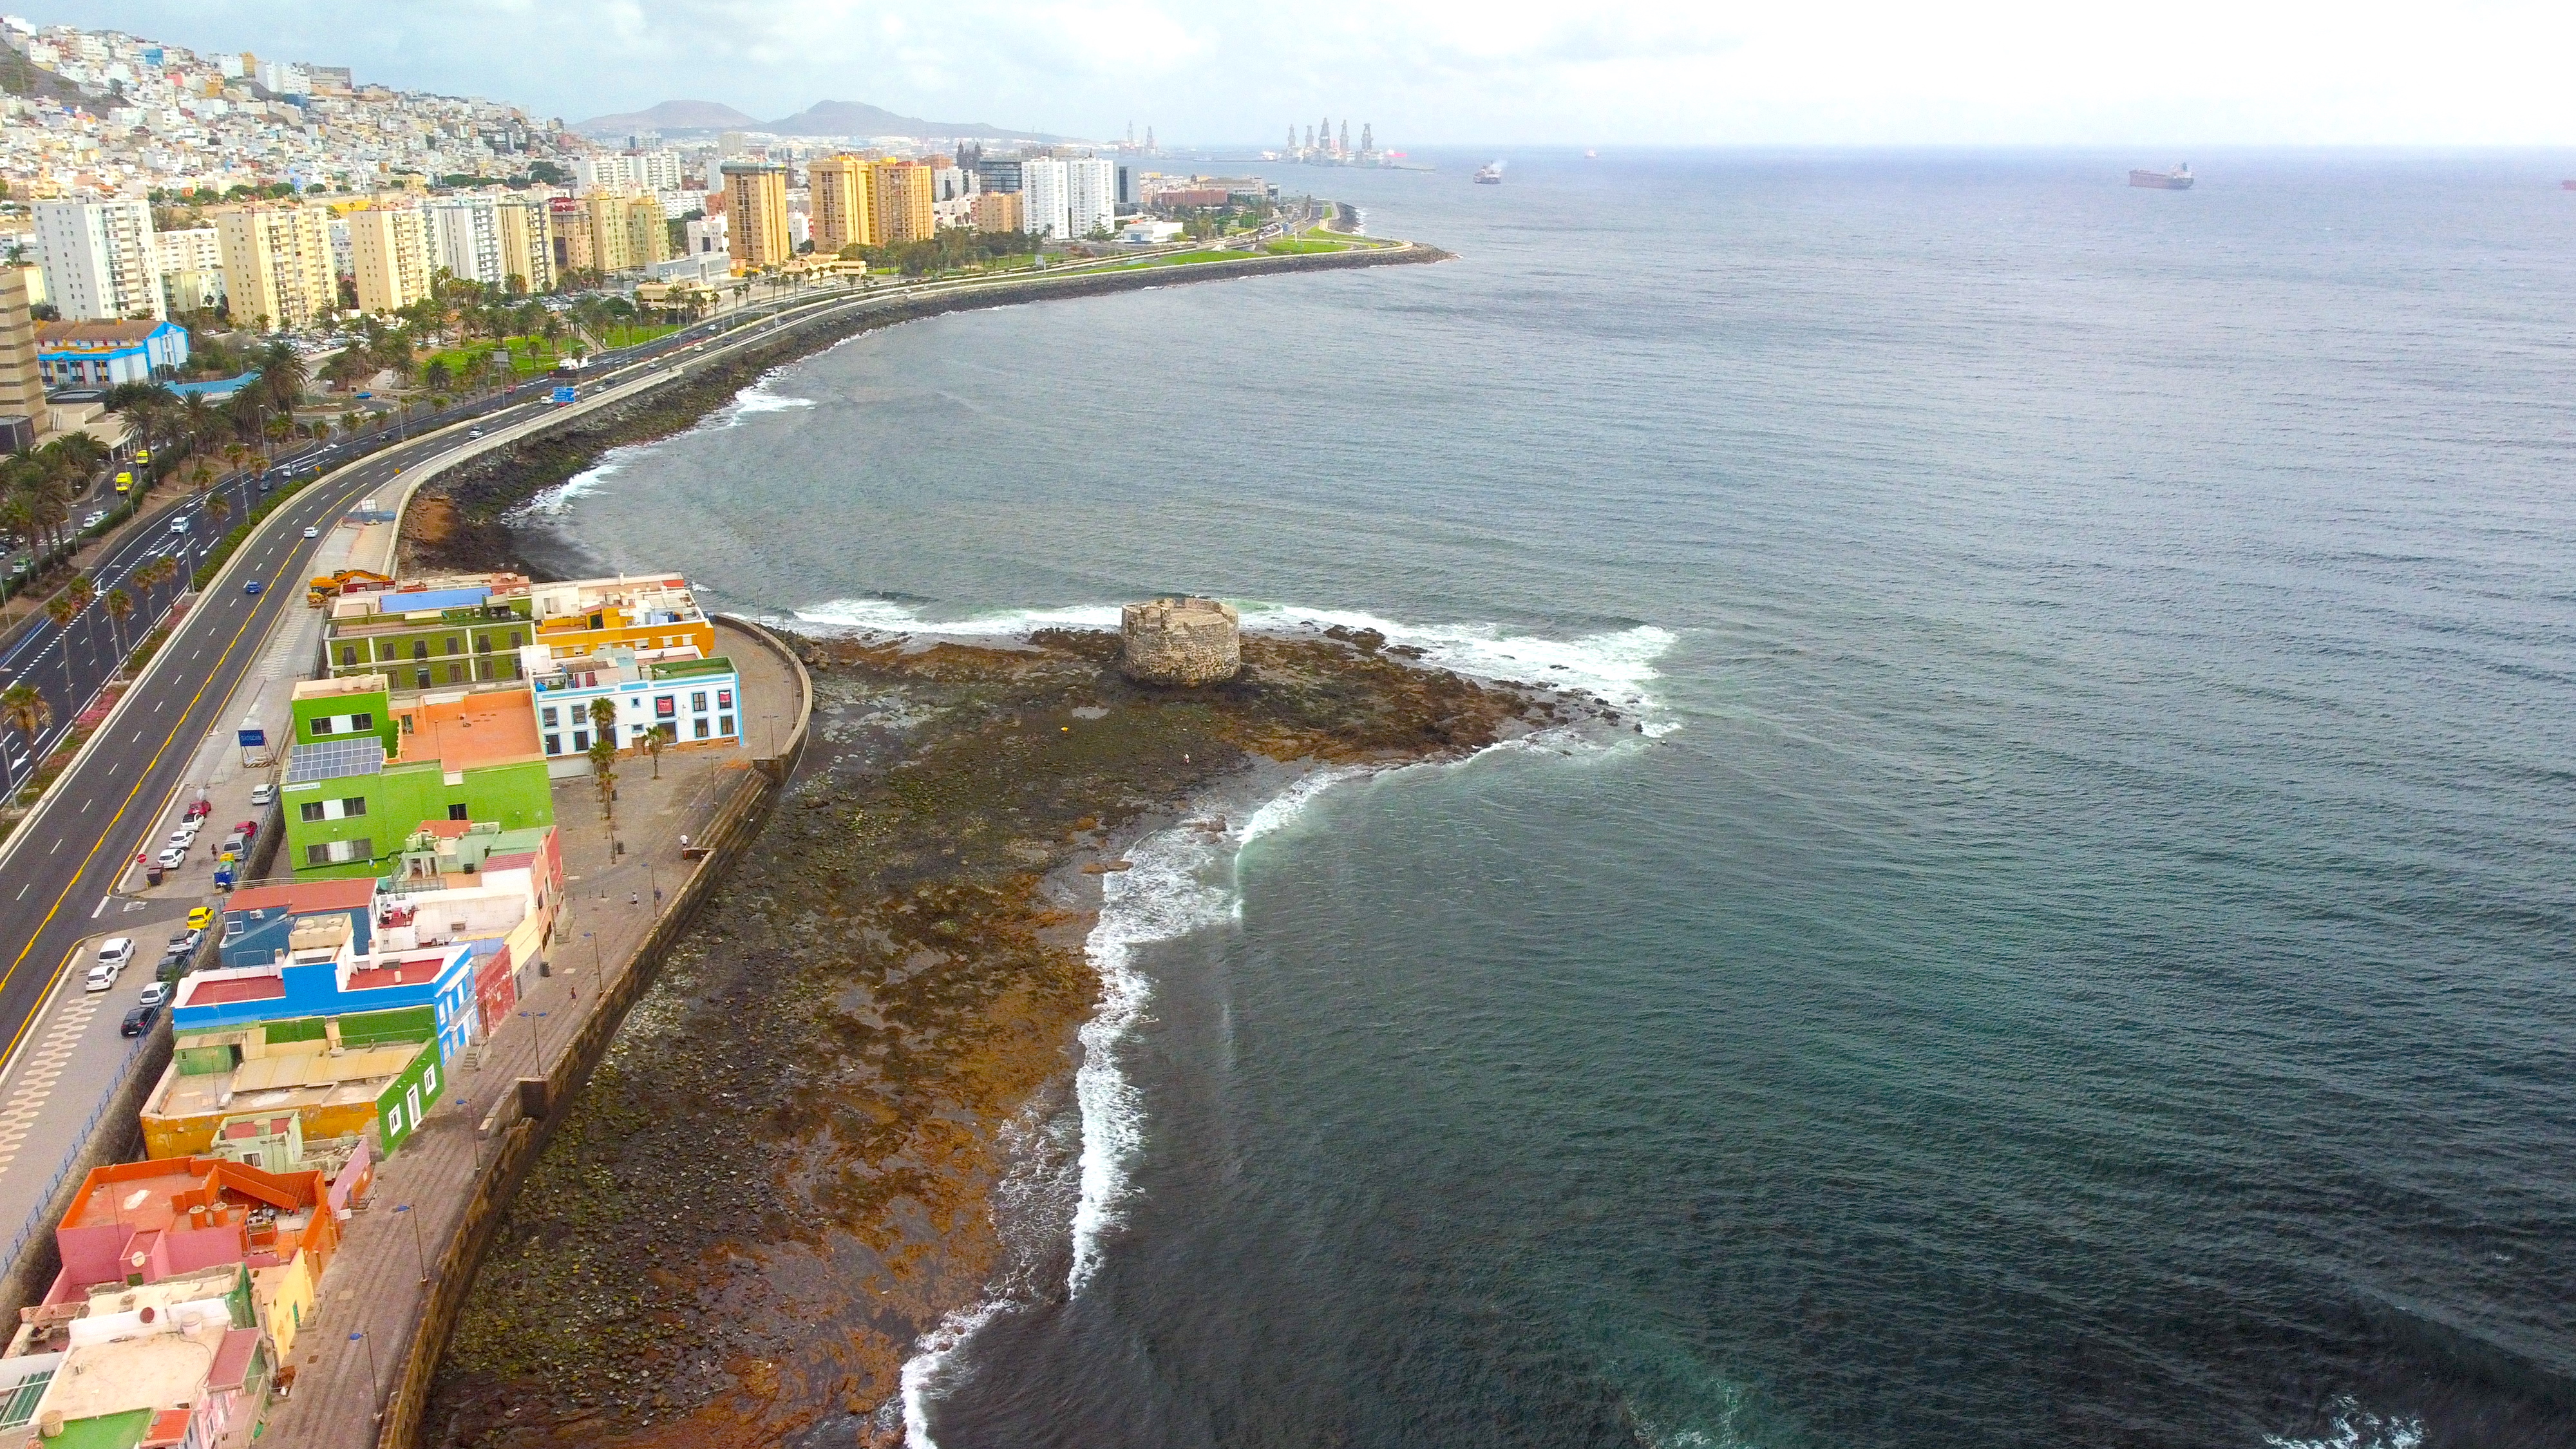 SE VENDE 2 solares urbanos (112 m2 y 140 m2) - playa de San Cristóbal - Las Palmas